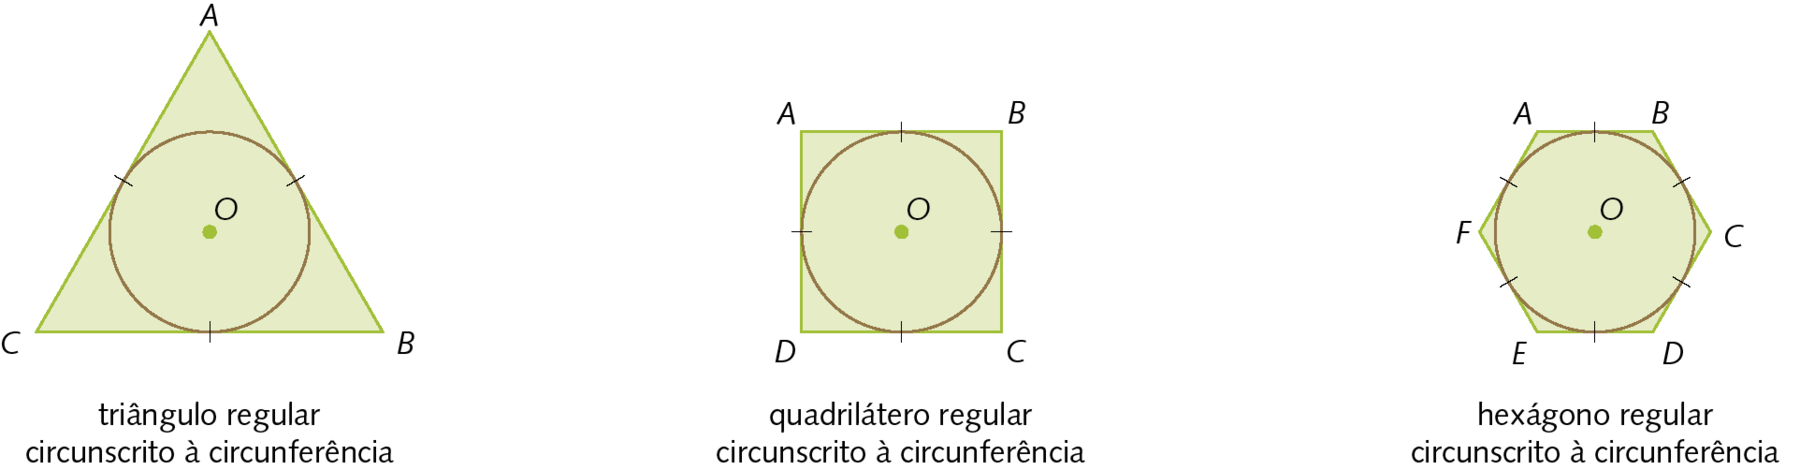 Figura geométrica. Circunferência de centro O. Fora, triângulo ABC com os lados congruentes e tangentes à circunferência. Cota: triângulo regular circunscrito à circunferência. Ao lado, figura geométrica. Circunferência de centro O. Fora, quadrilátero ABCD com os lados congruentes e tangentes à circunferência. Cota: quadrilátero regular circunscrito à circunferência. Ao lado, figura geométrica. Circunferência de centro O. Fora, hexágono ABCDEF com os lados congruentes e tangentes à circunferência. Cota: hexágono regular circunscrito à circunferência.